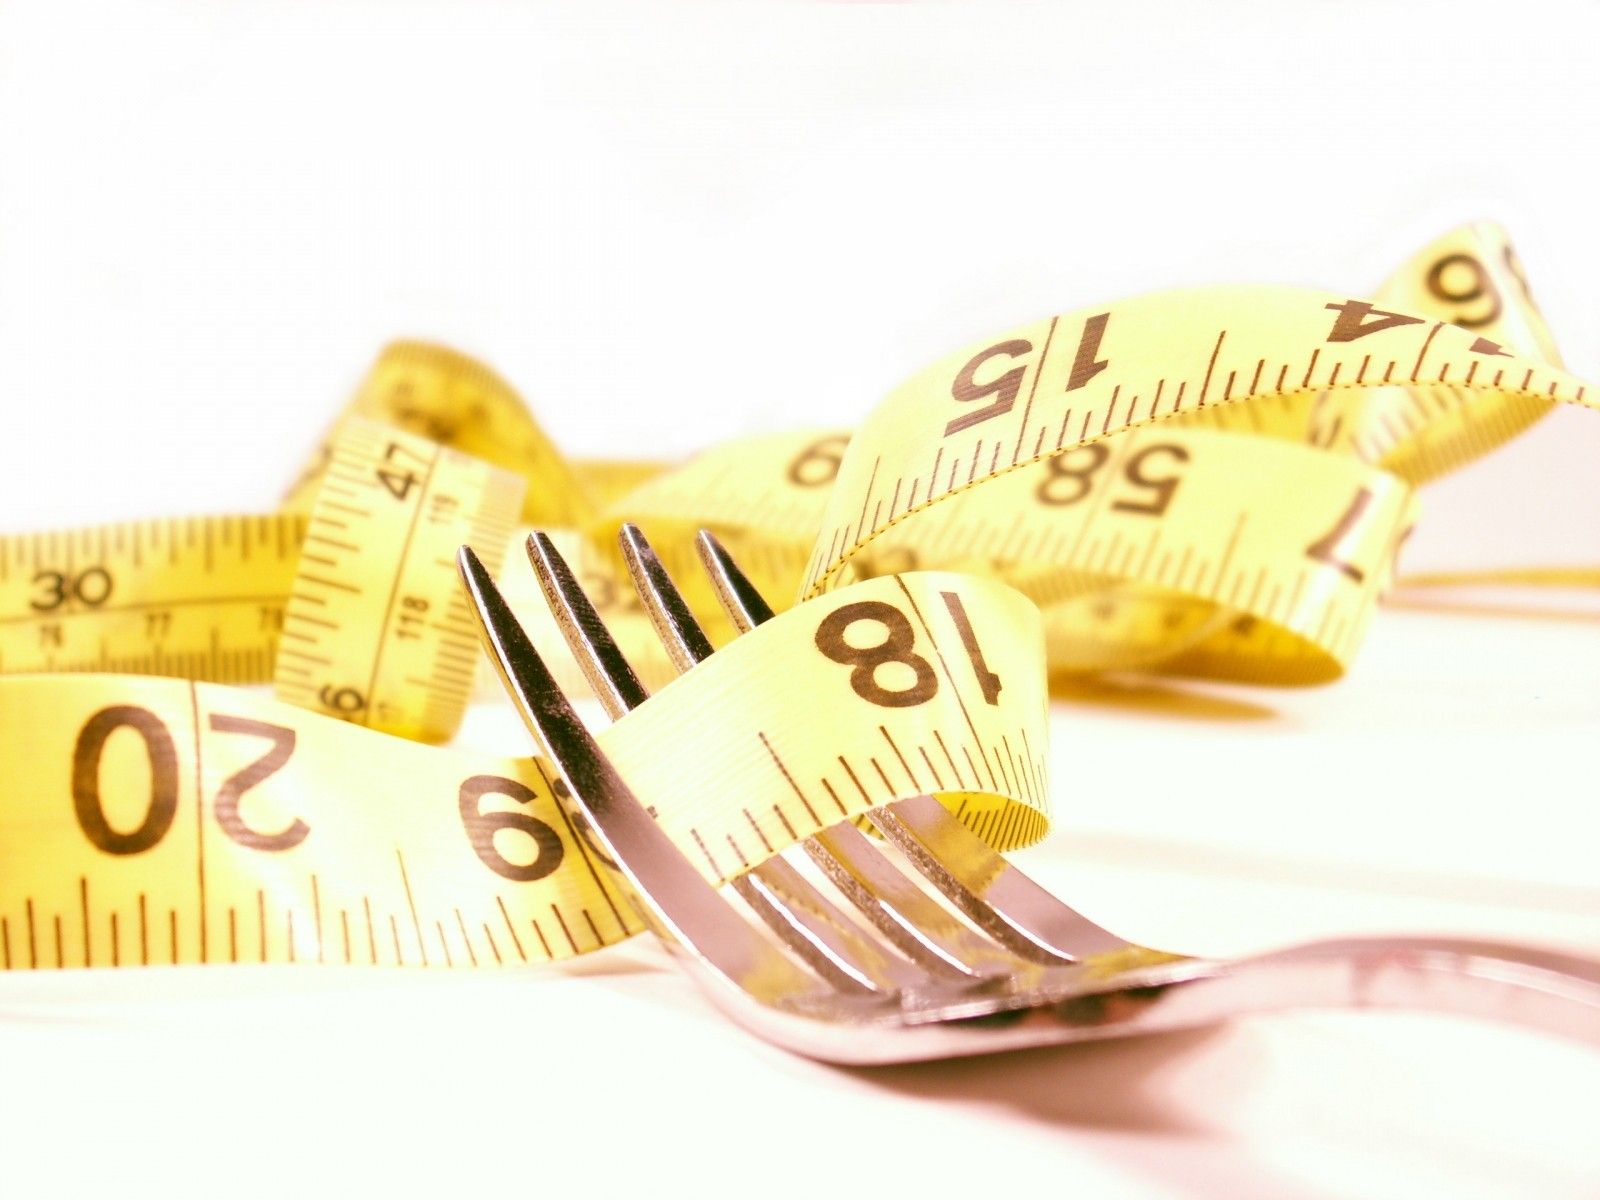 Dieta zero, programma, vantaggi e controindicazioni